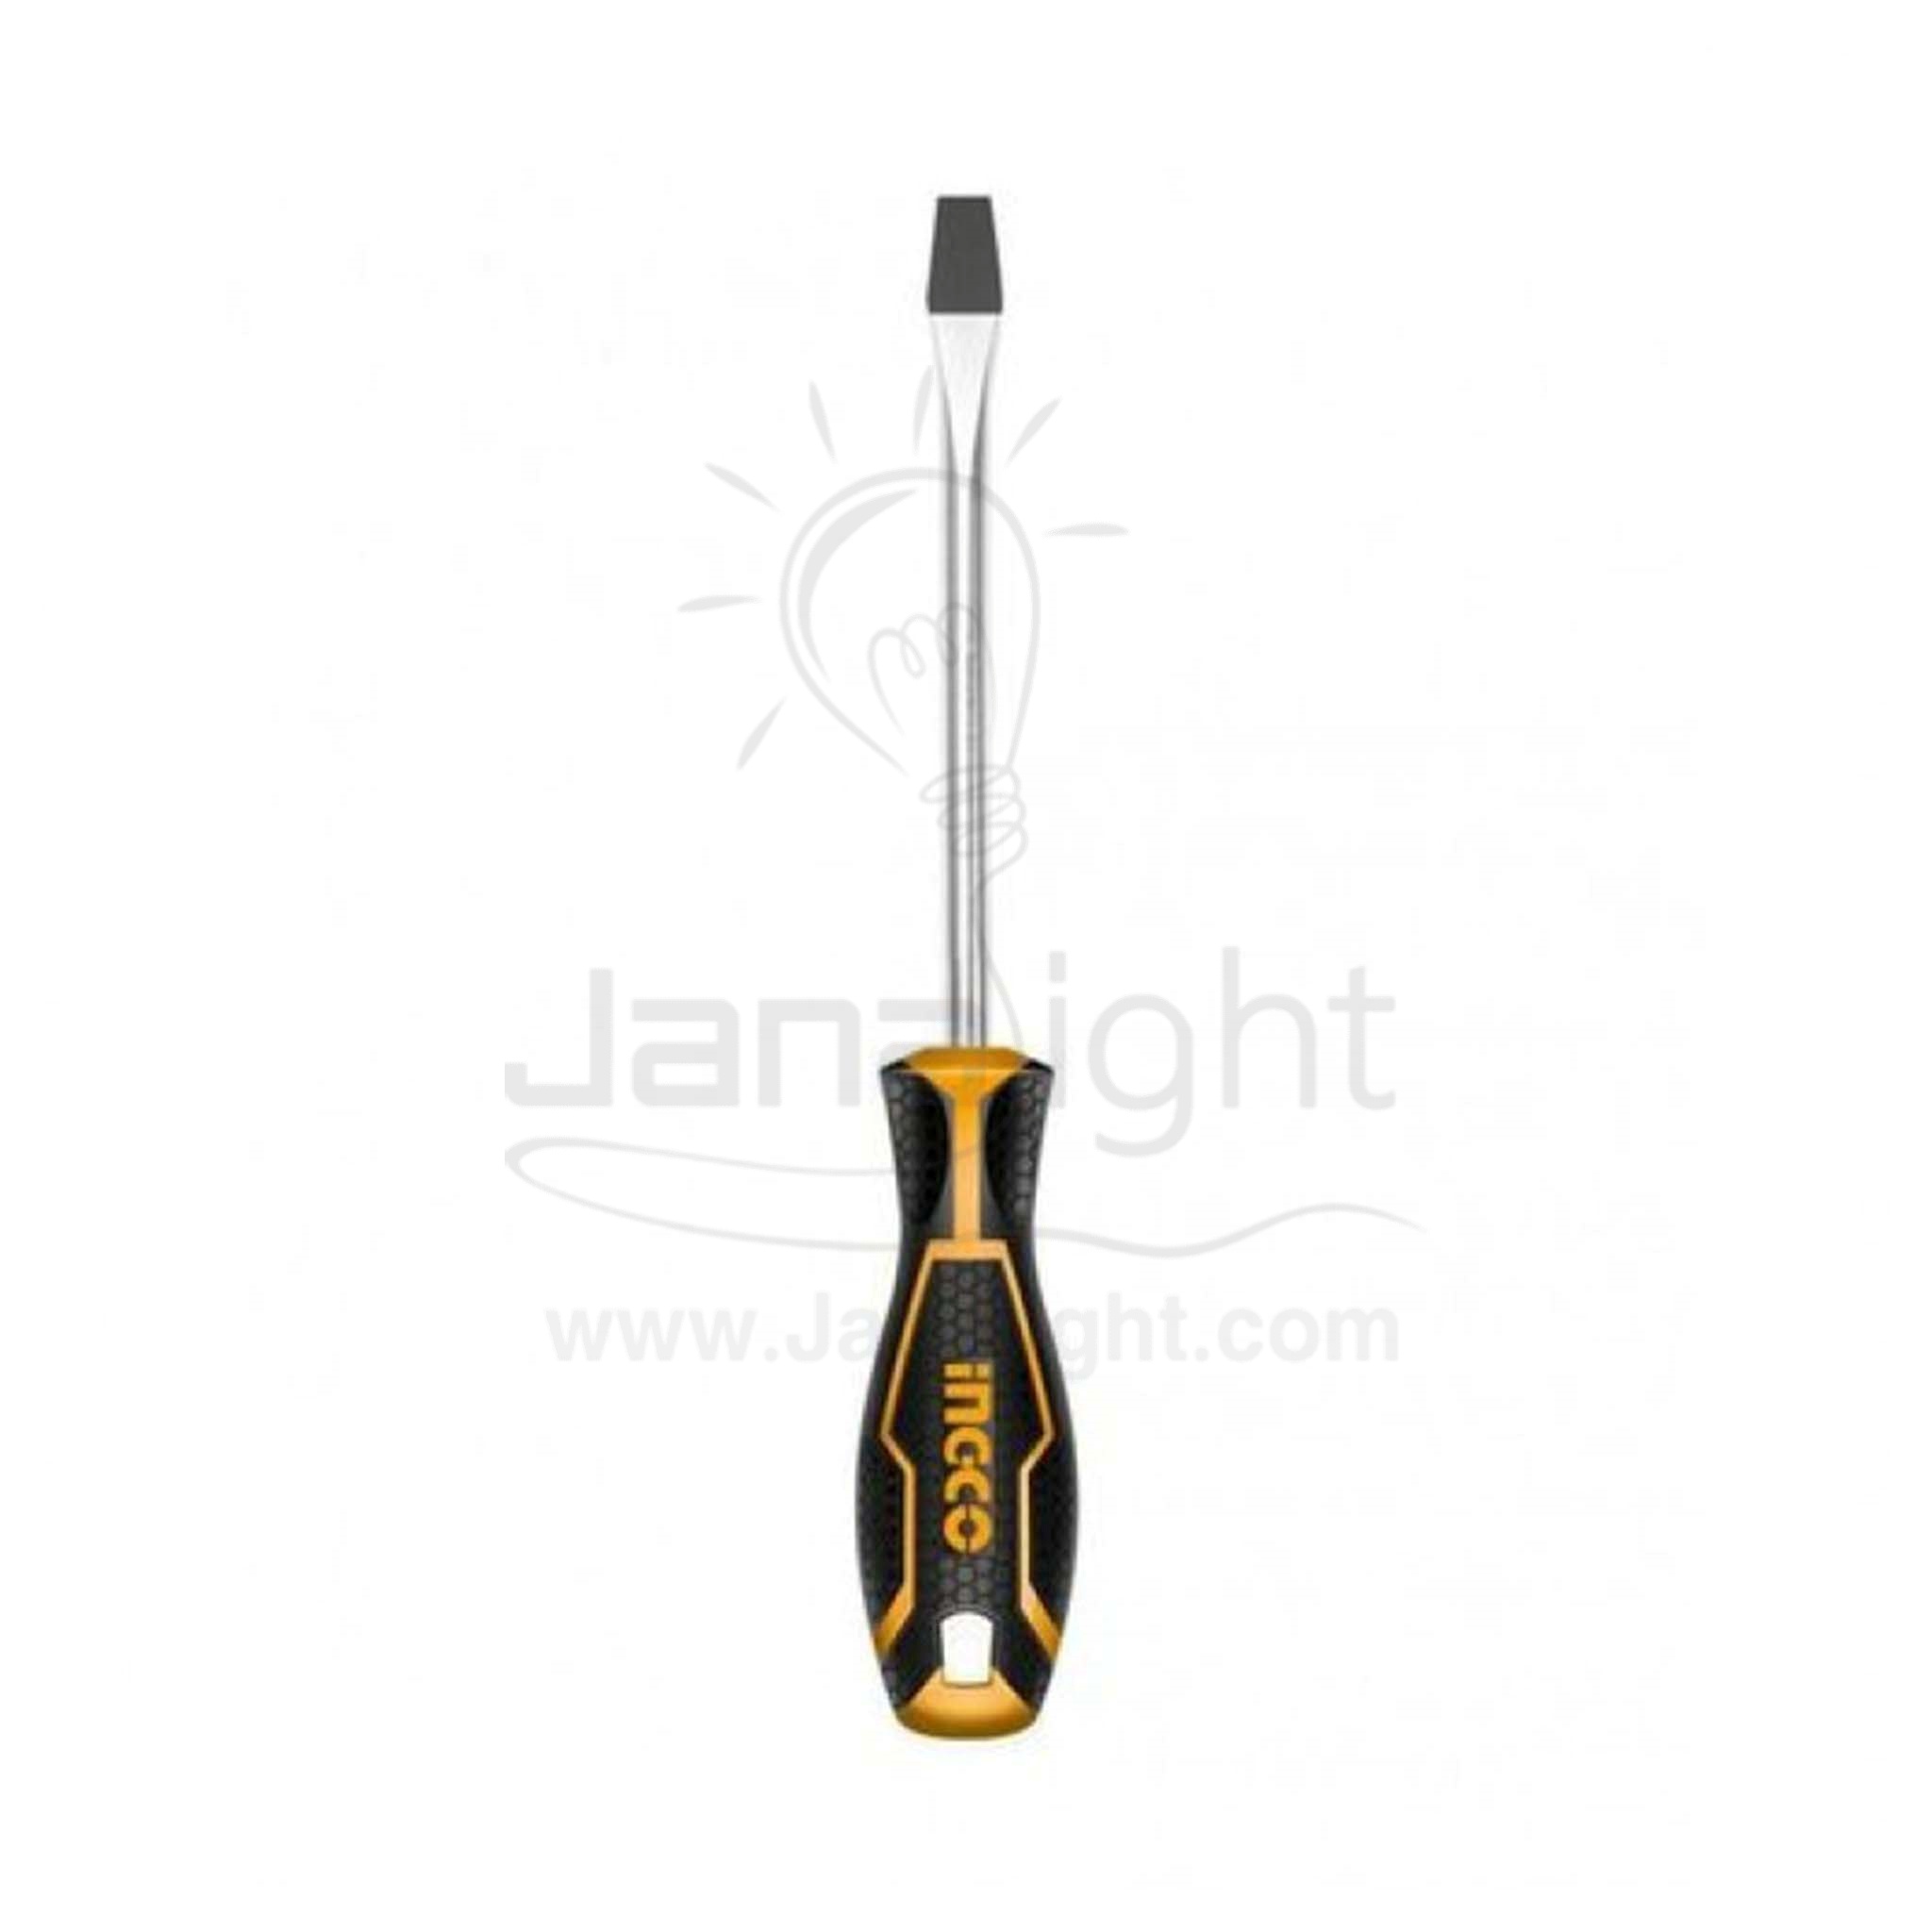 مفك عادي 5 بوصة اصفر انكو HS586125 Standard tip screwdriver 5 inches ingco